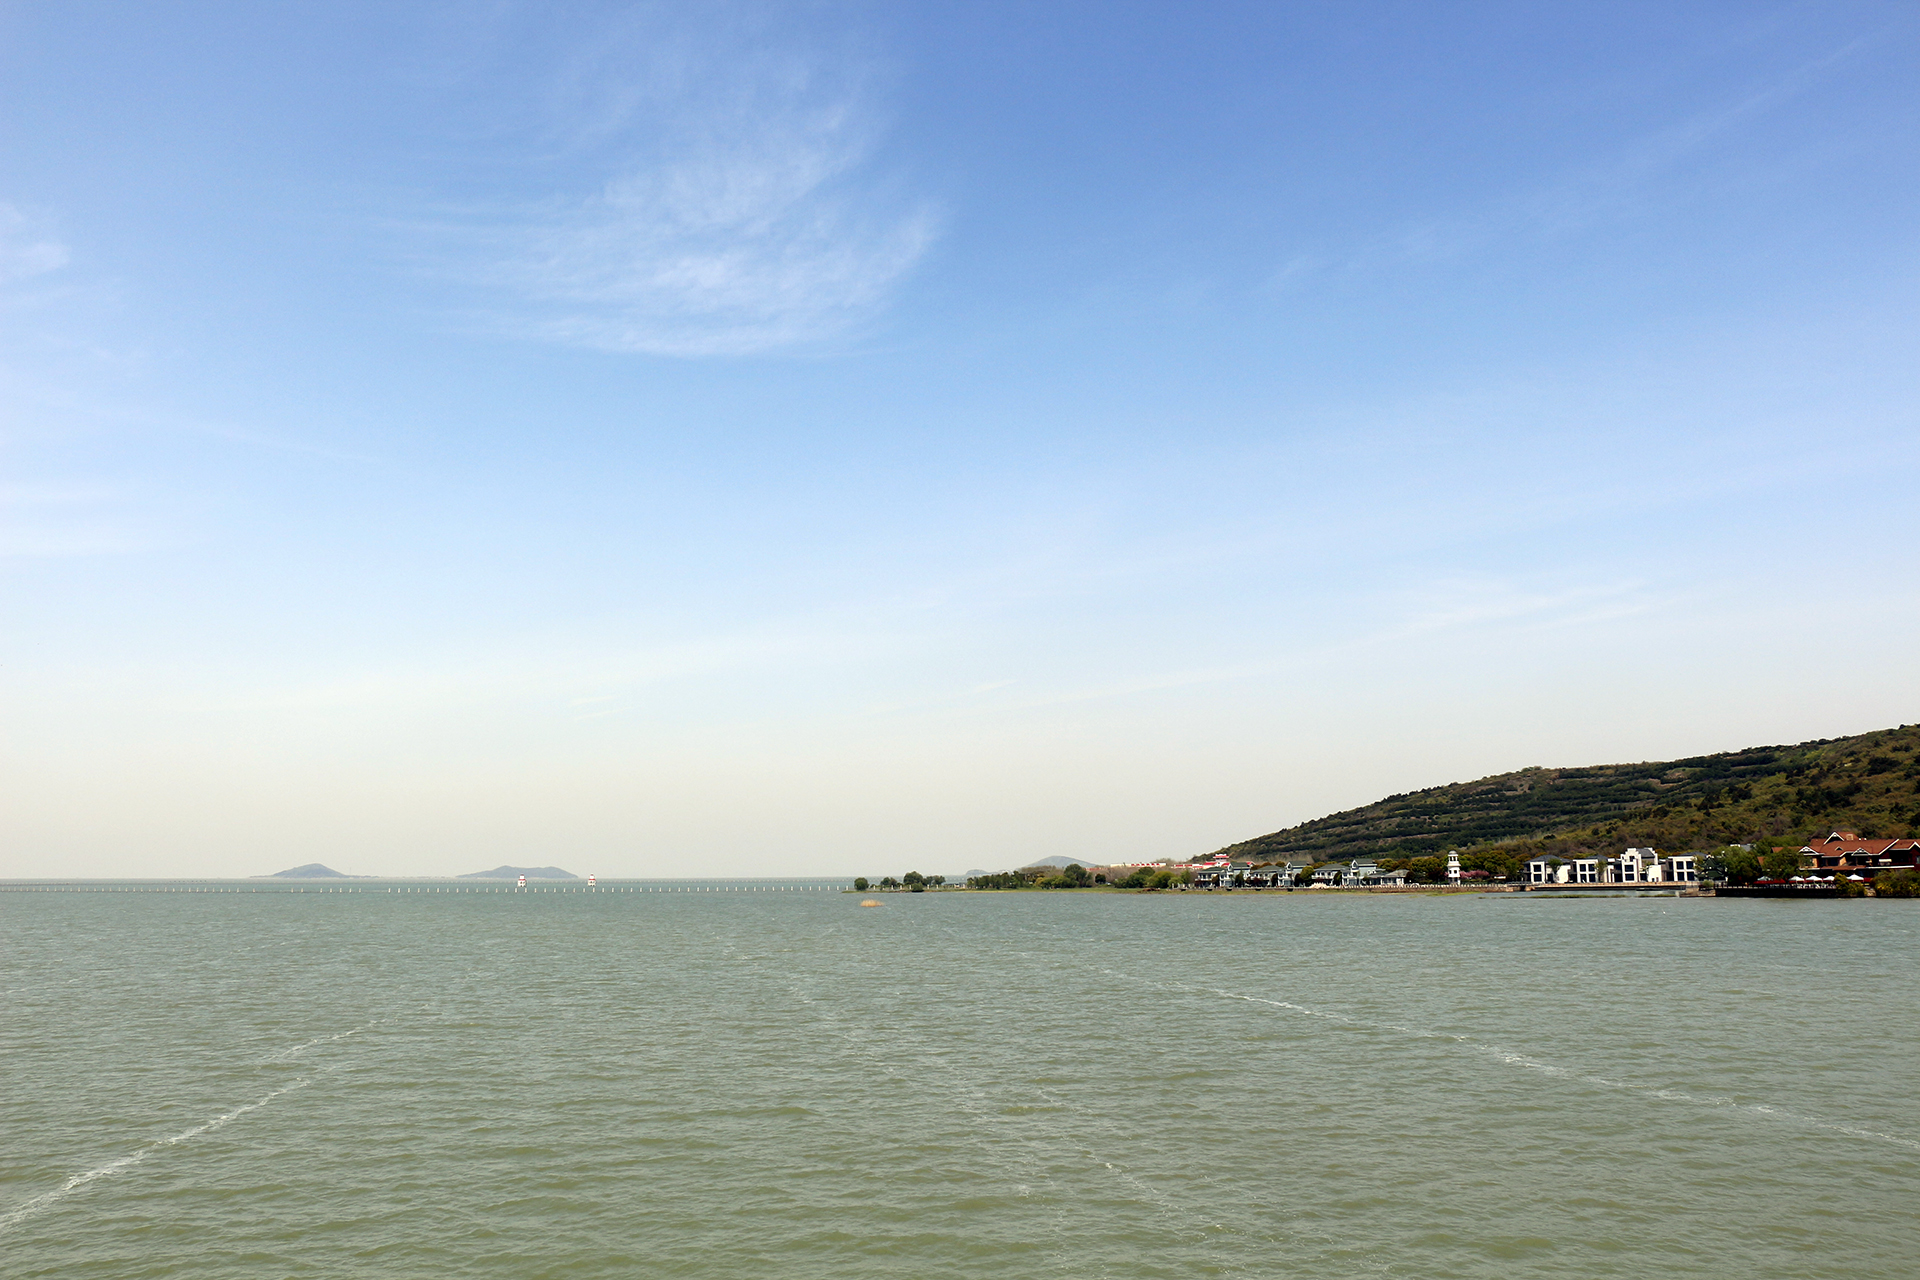 苏州必游景点 太湖位于长江三角洲的南缘,古称震泽,具区,又名五湖